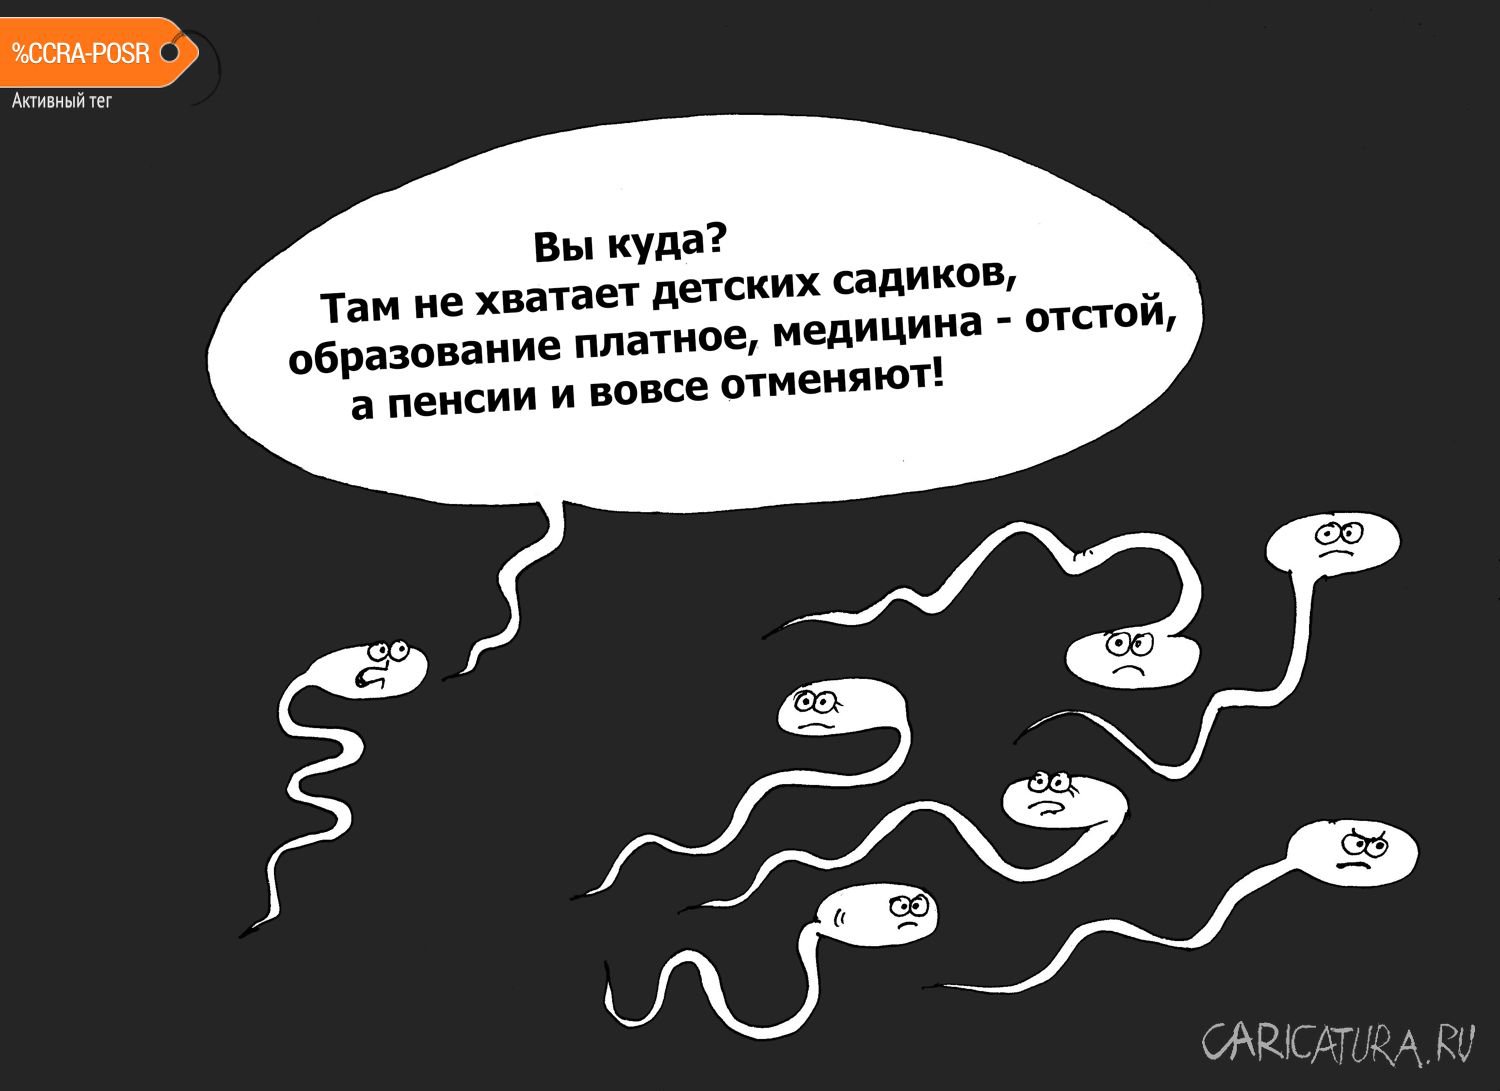 Карикатура "Где-то в России", Валерий Тарасенко